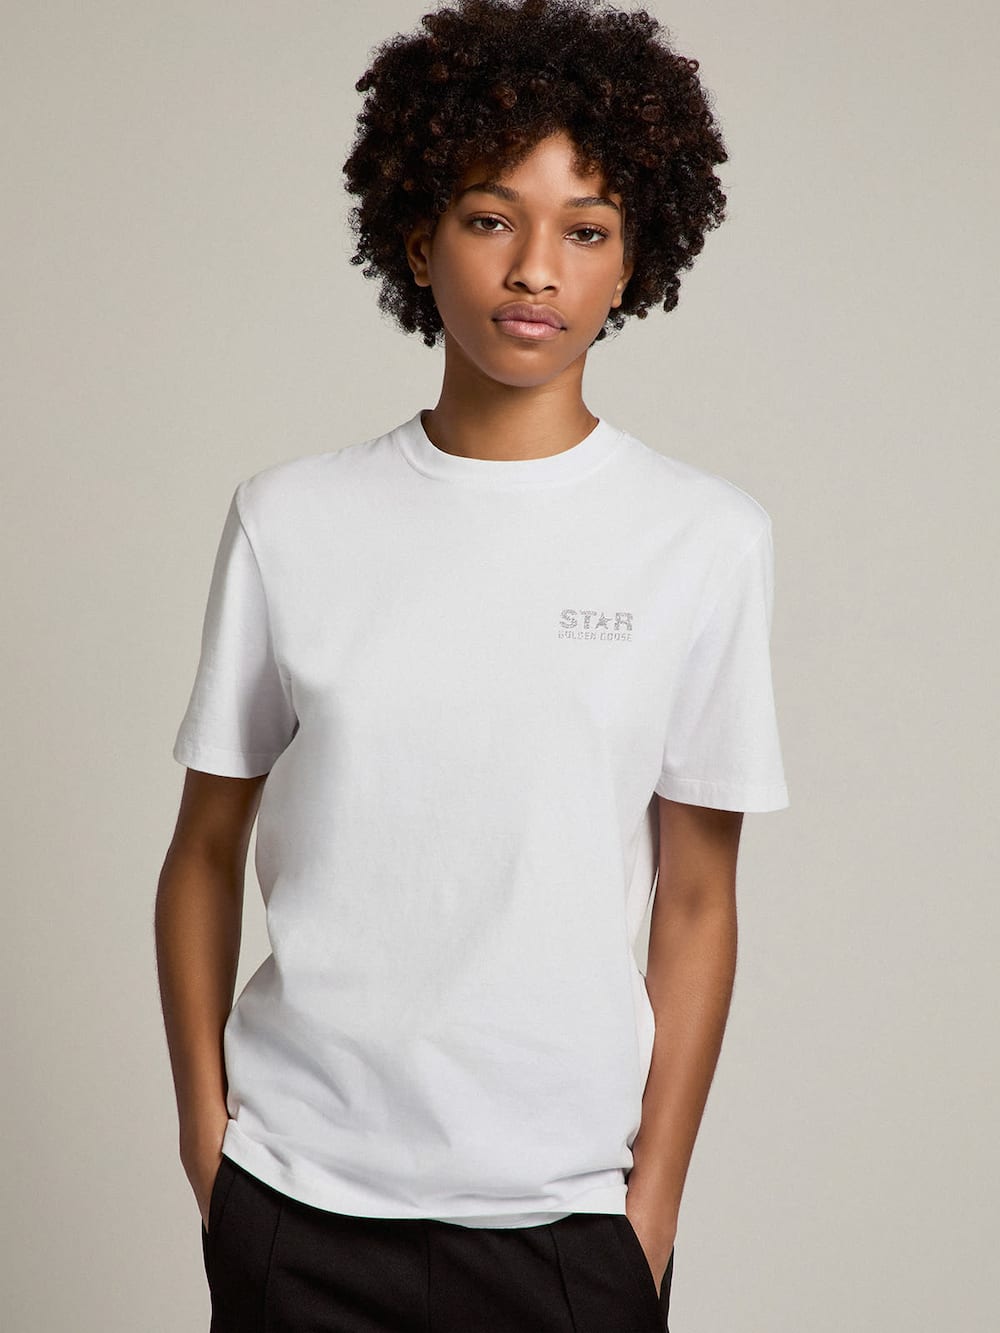 Golden Goose - T-shirt femme blanc avec logo et étoile à paillettes argentées in 